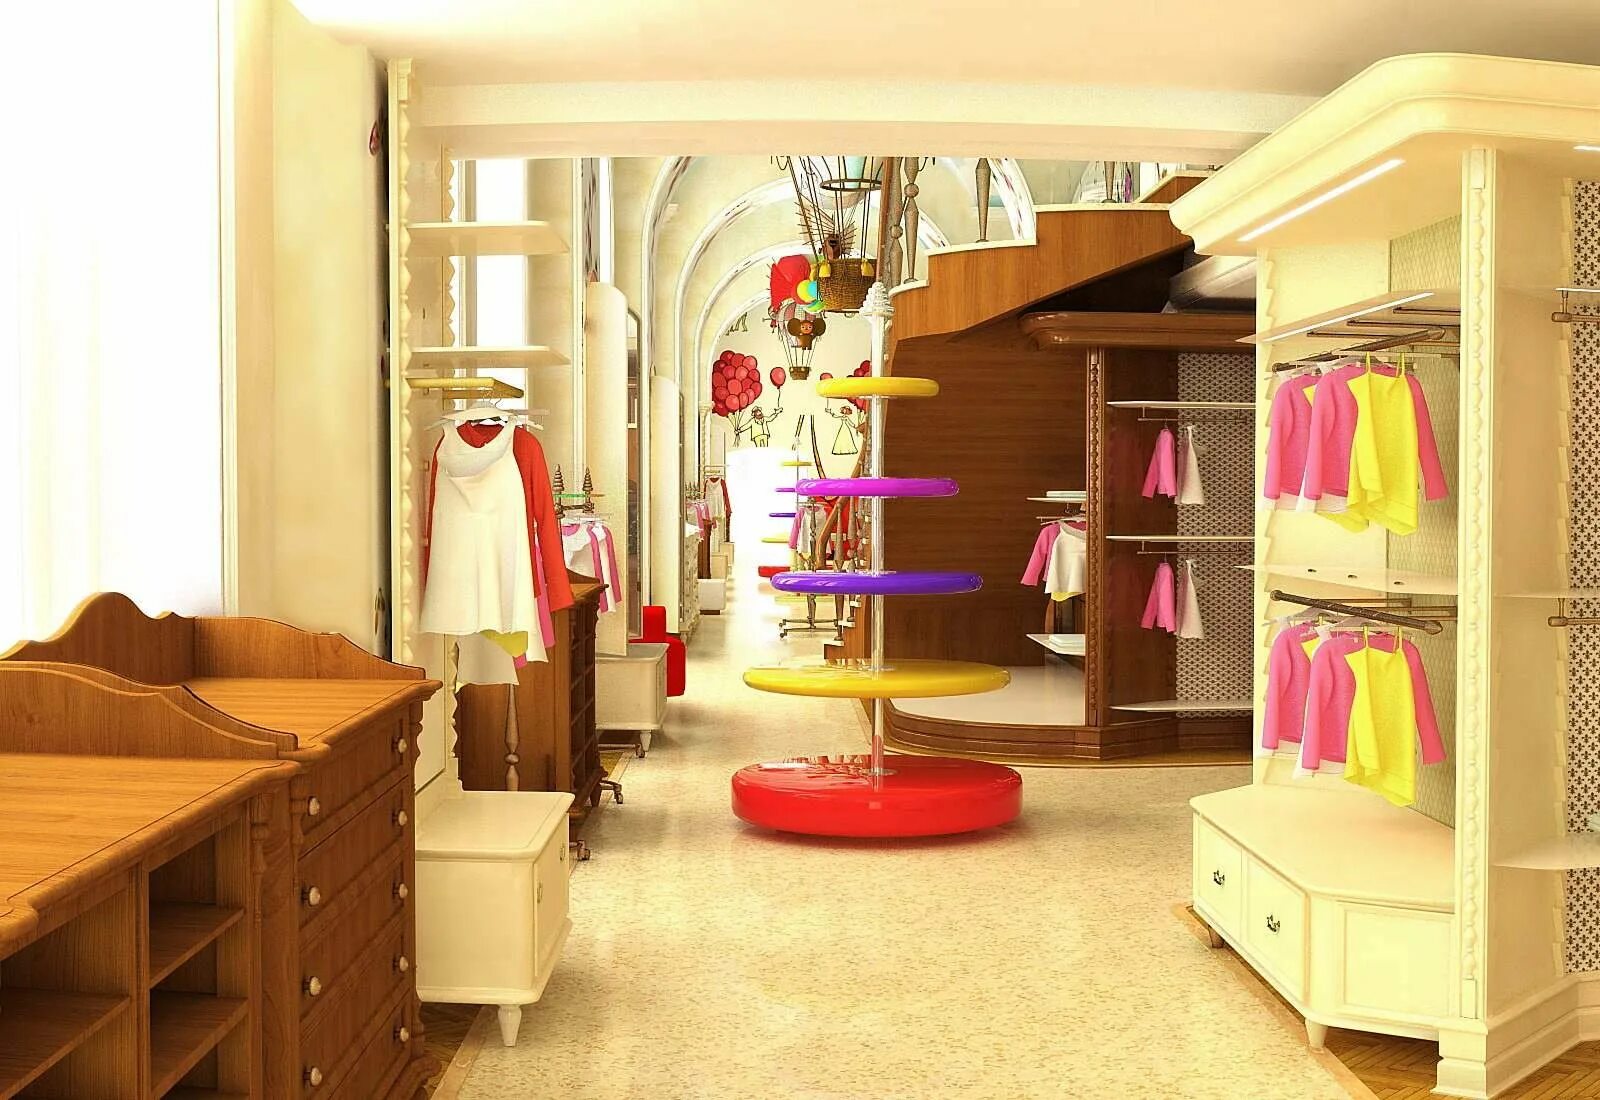 Детский магазин г. Интерьер детского магазина. Интерьер магазина детской одежды. Магазин детской одежды проект. Дизайн детского магазина одежды.